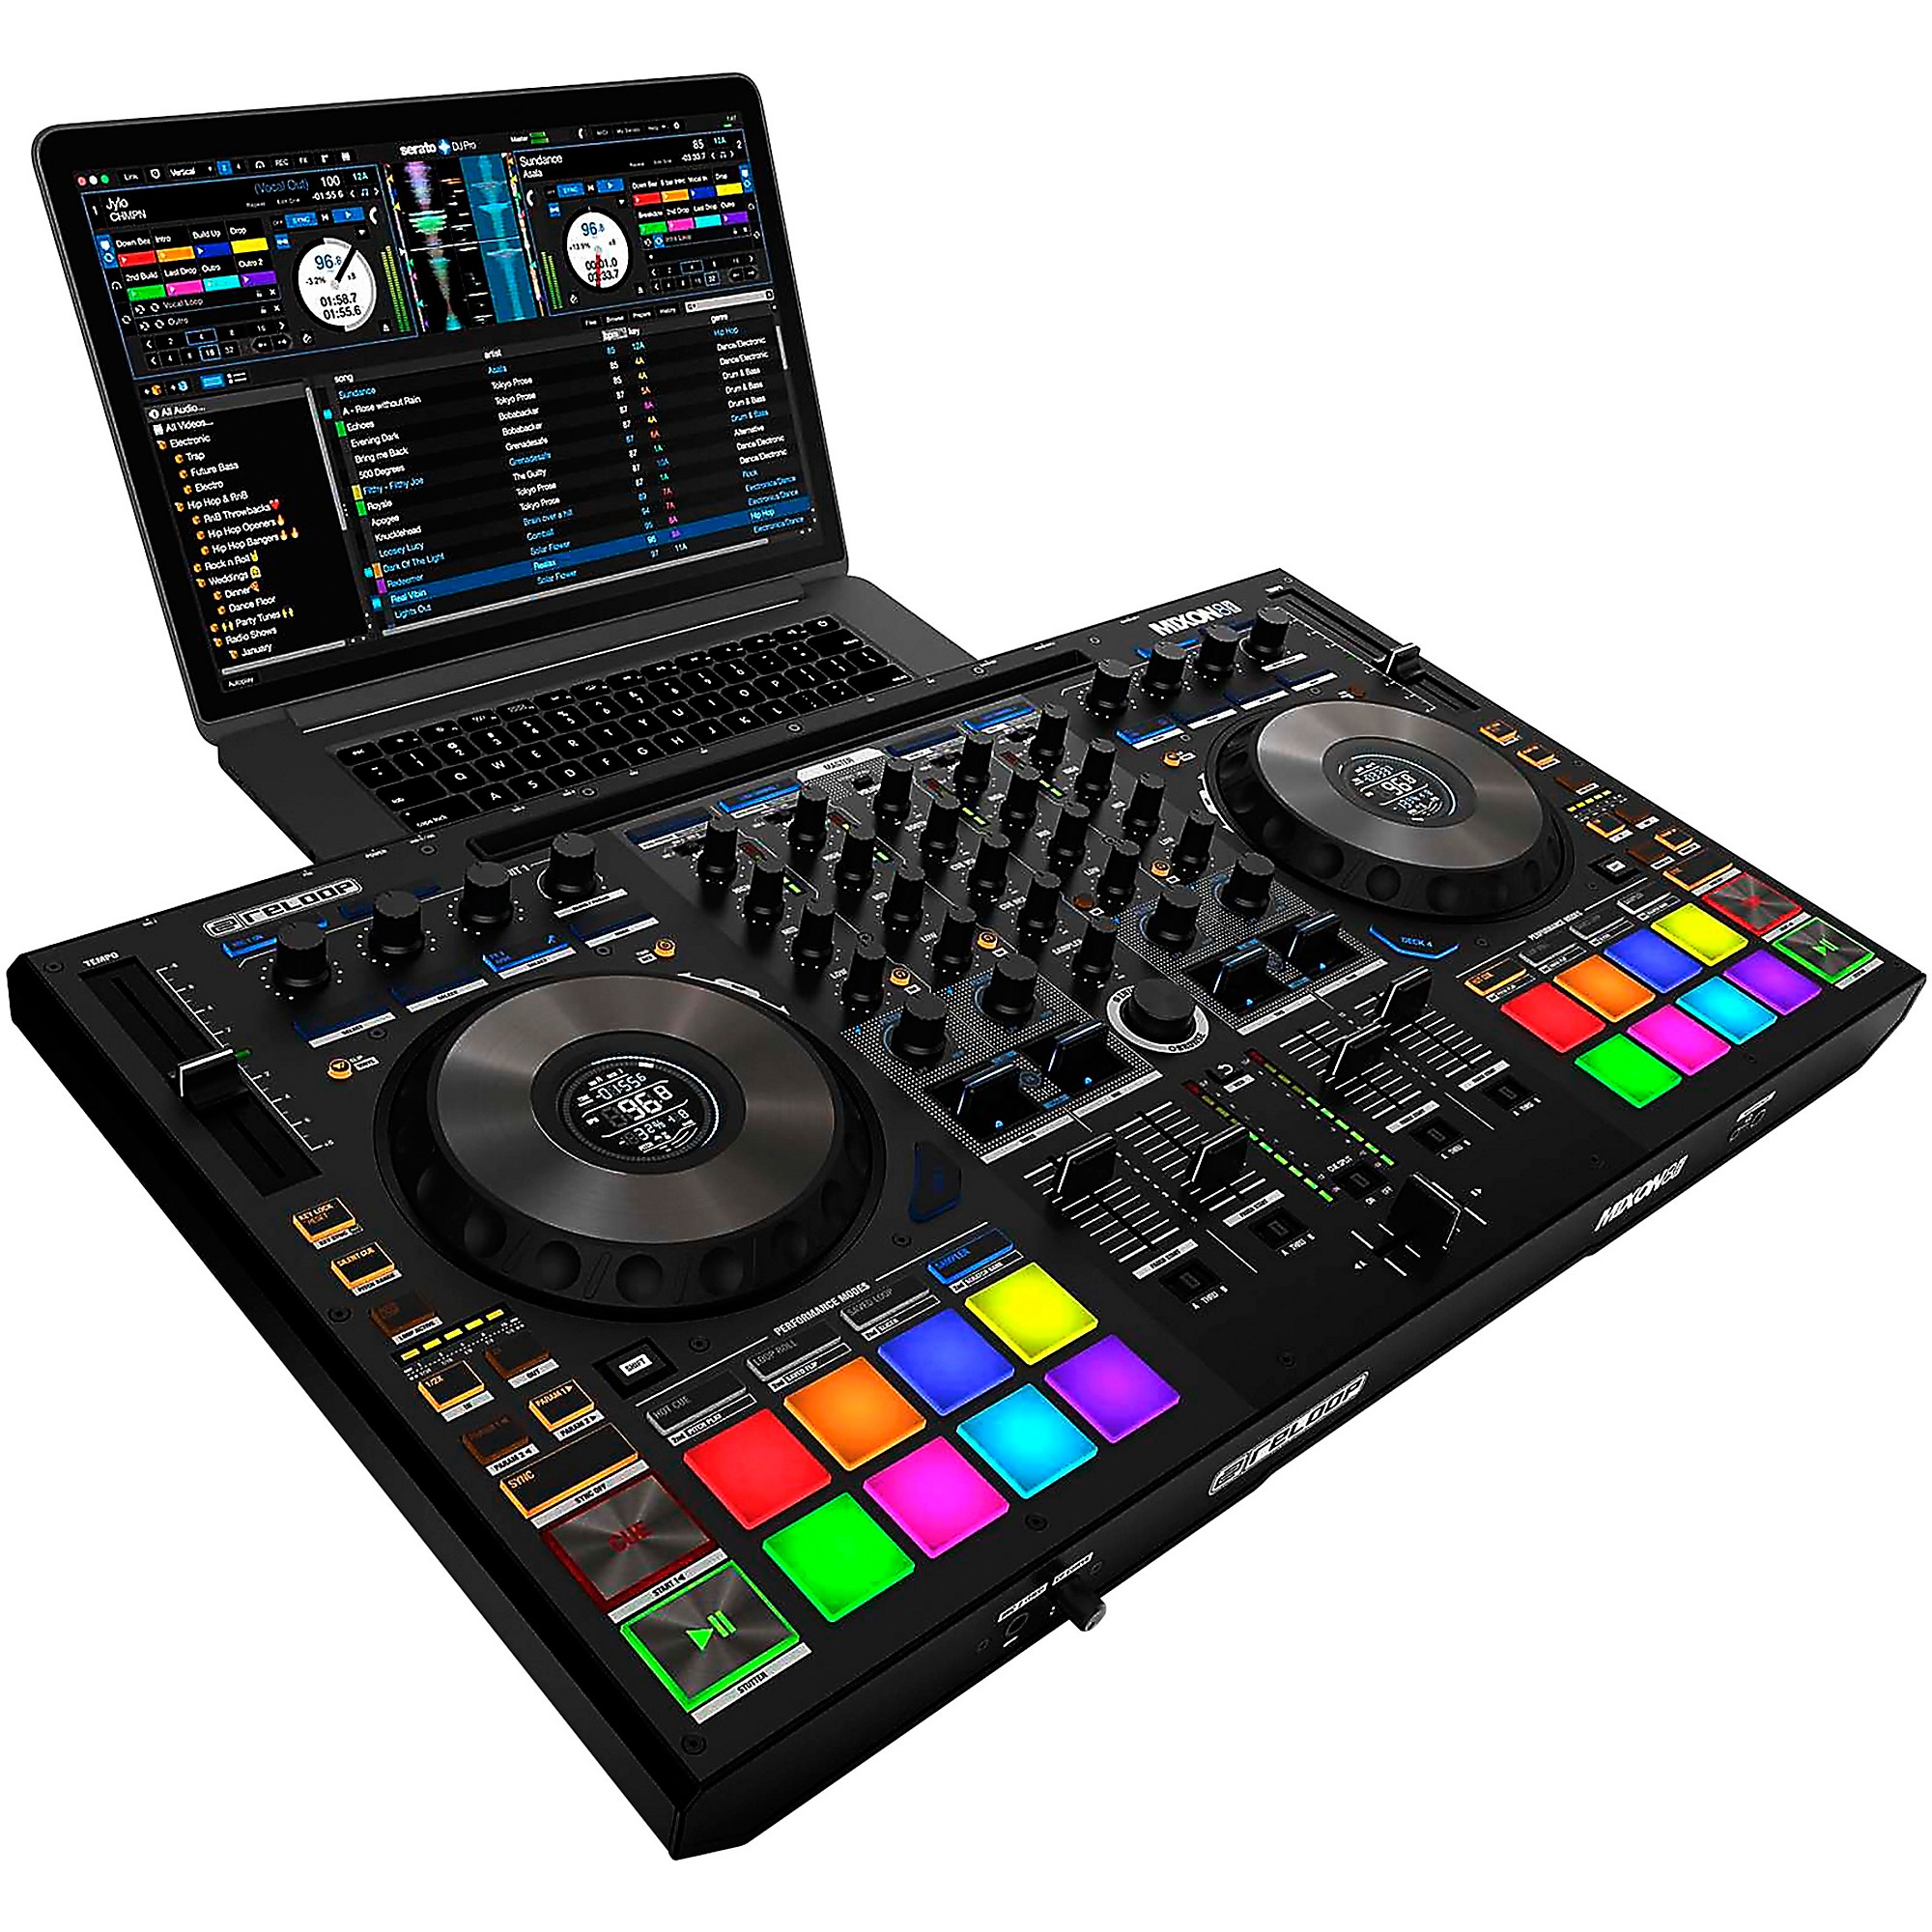 Jogwheels Reloop Mixon 8 pro not tracking properly - DJ Hardware